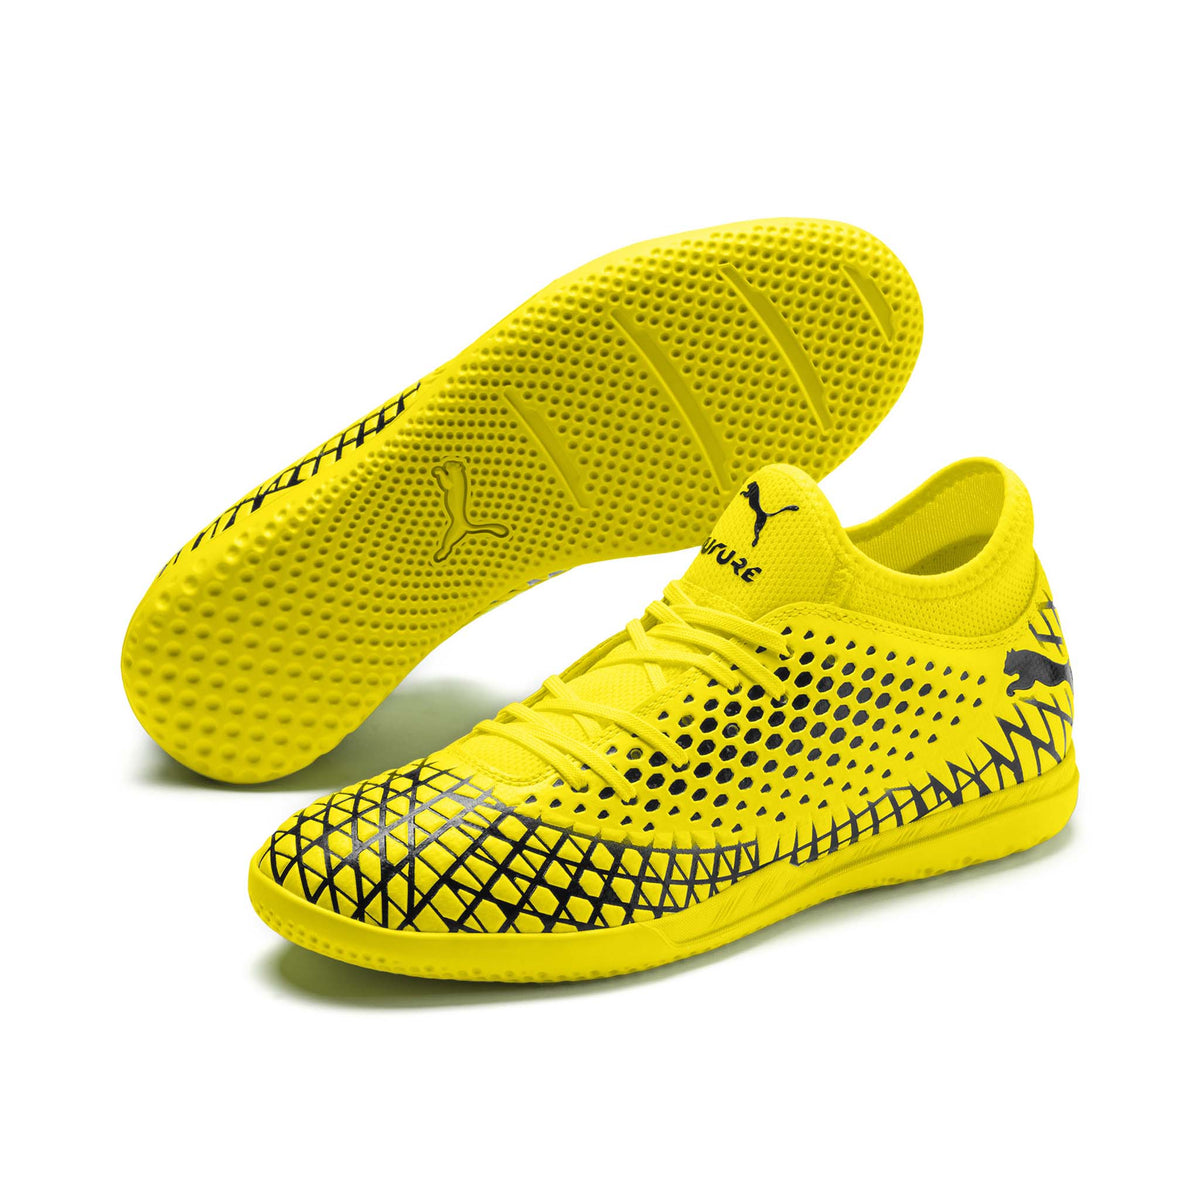 Puma Future 4.4 IT chaussures de soccer interieur jaune noir